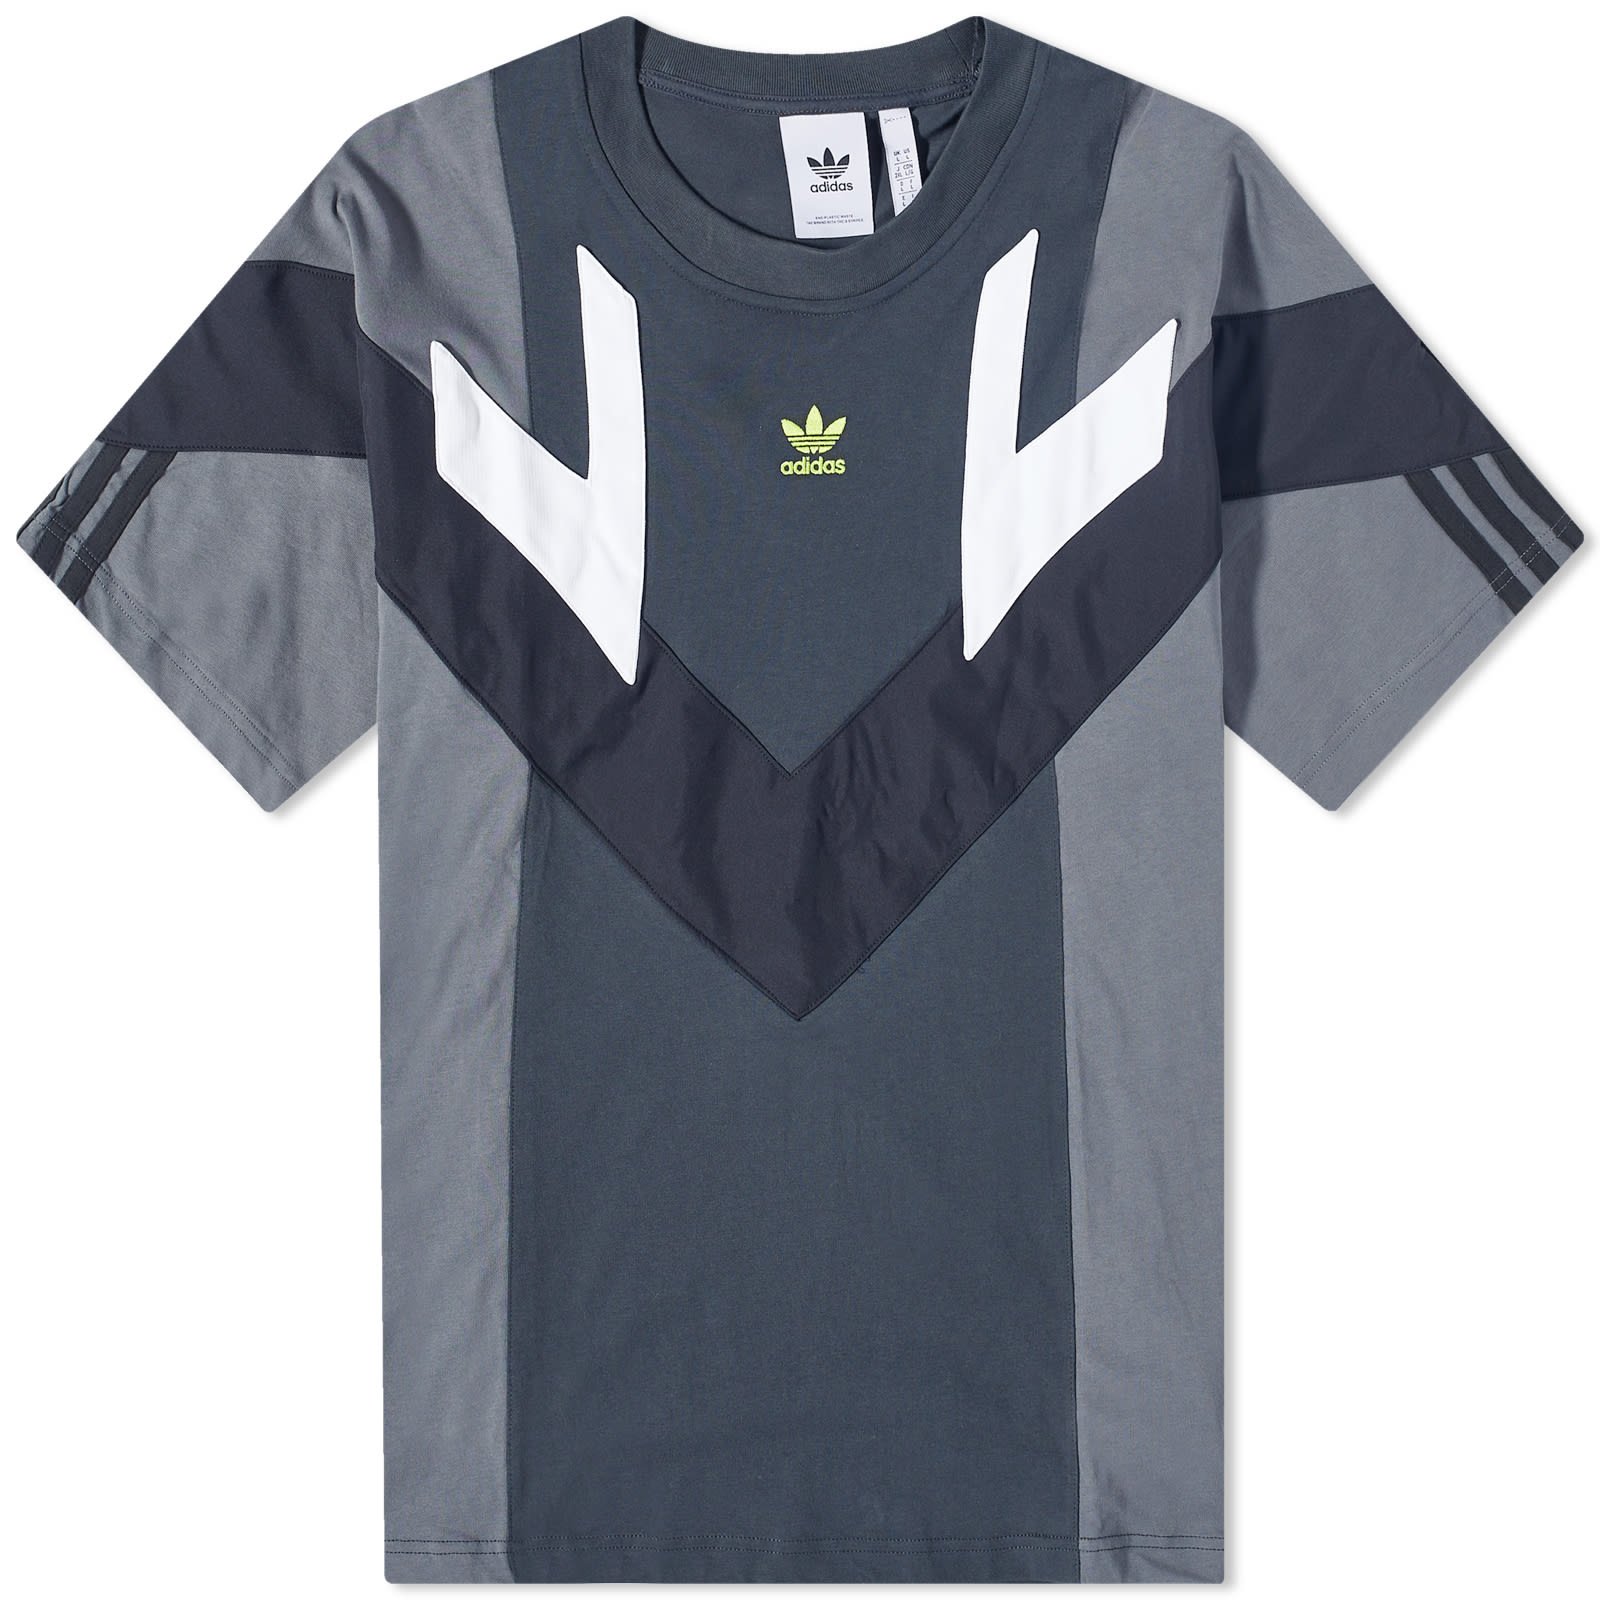 FLEXDOG | Originals adidas HR8597 Tee Rekive T-shirt